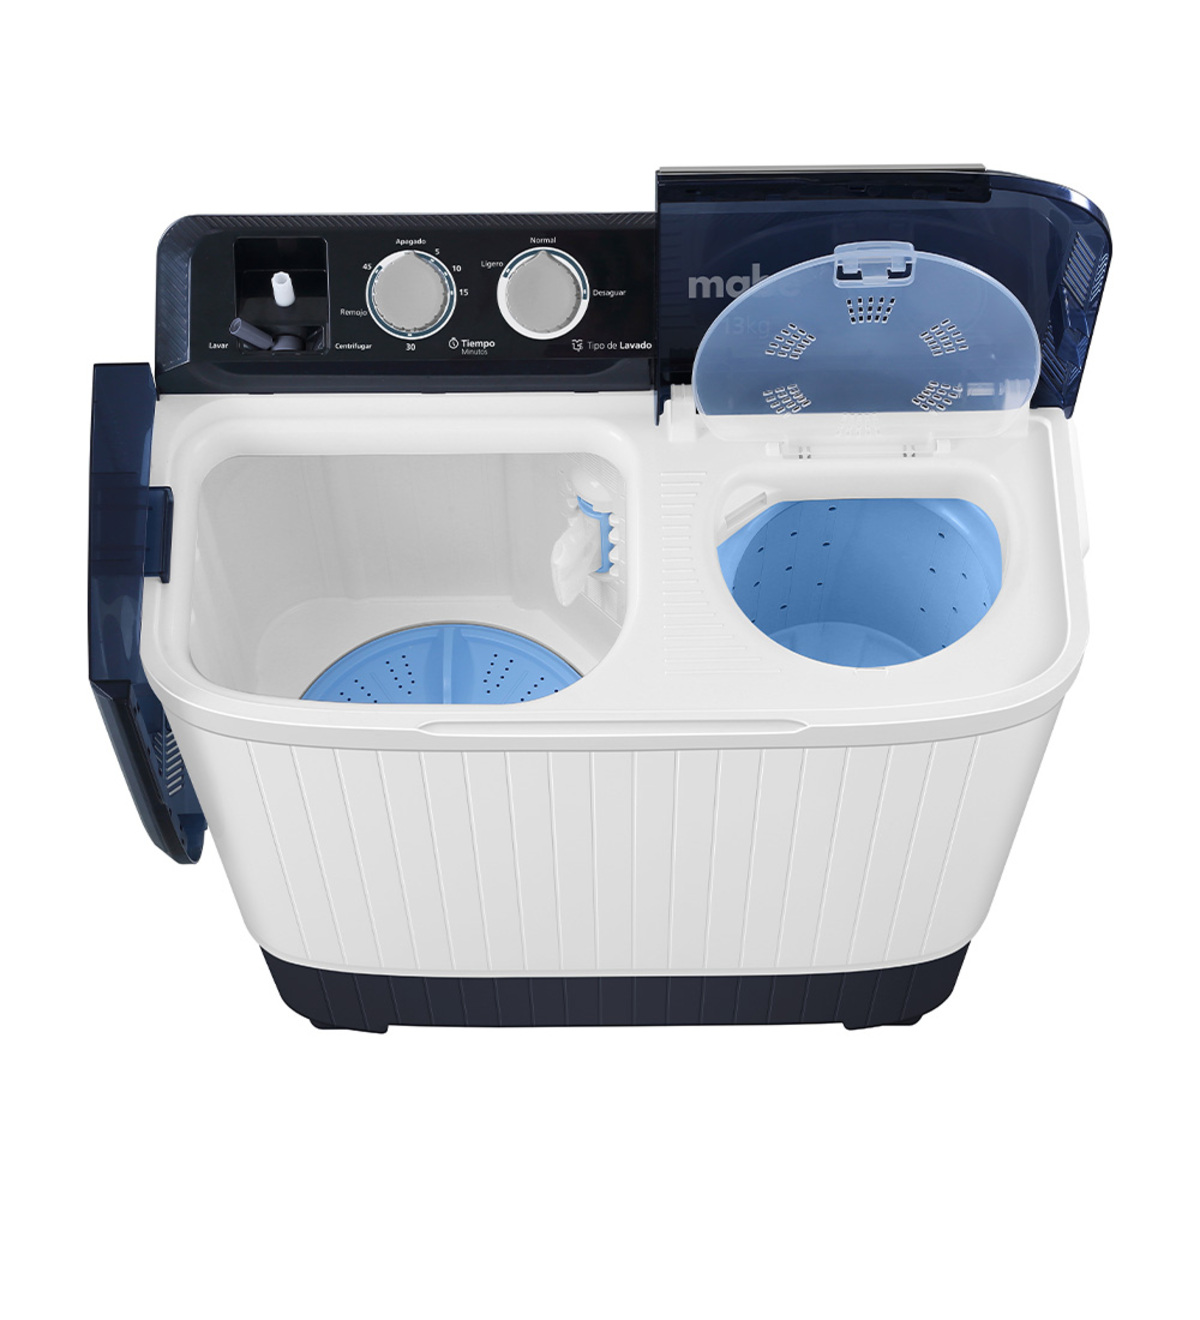 Almohadillas para Pies de Lavadoras | Universal Patas antivibracion  lavadora - 4 Piezas Soporte de Goma Antivibración - Amortiguador de  Vibraciones